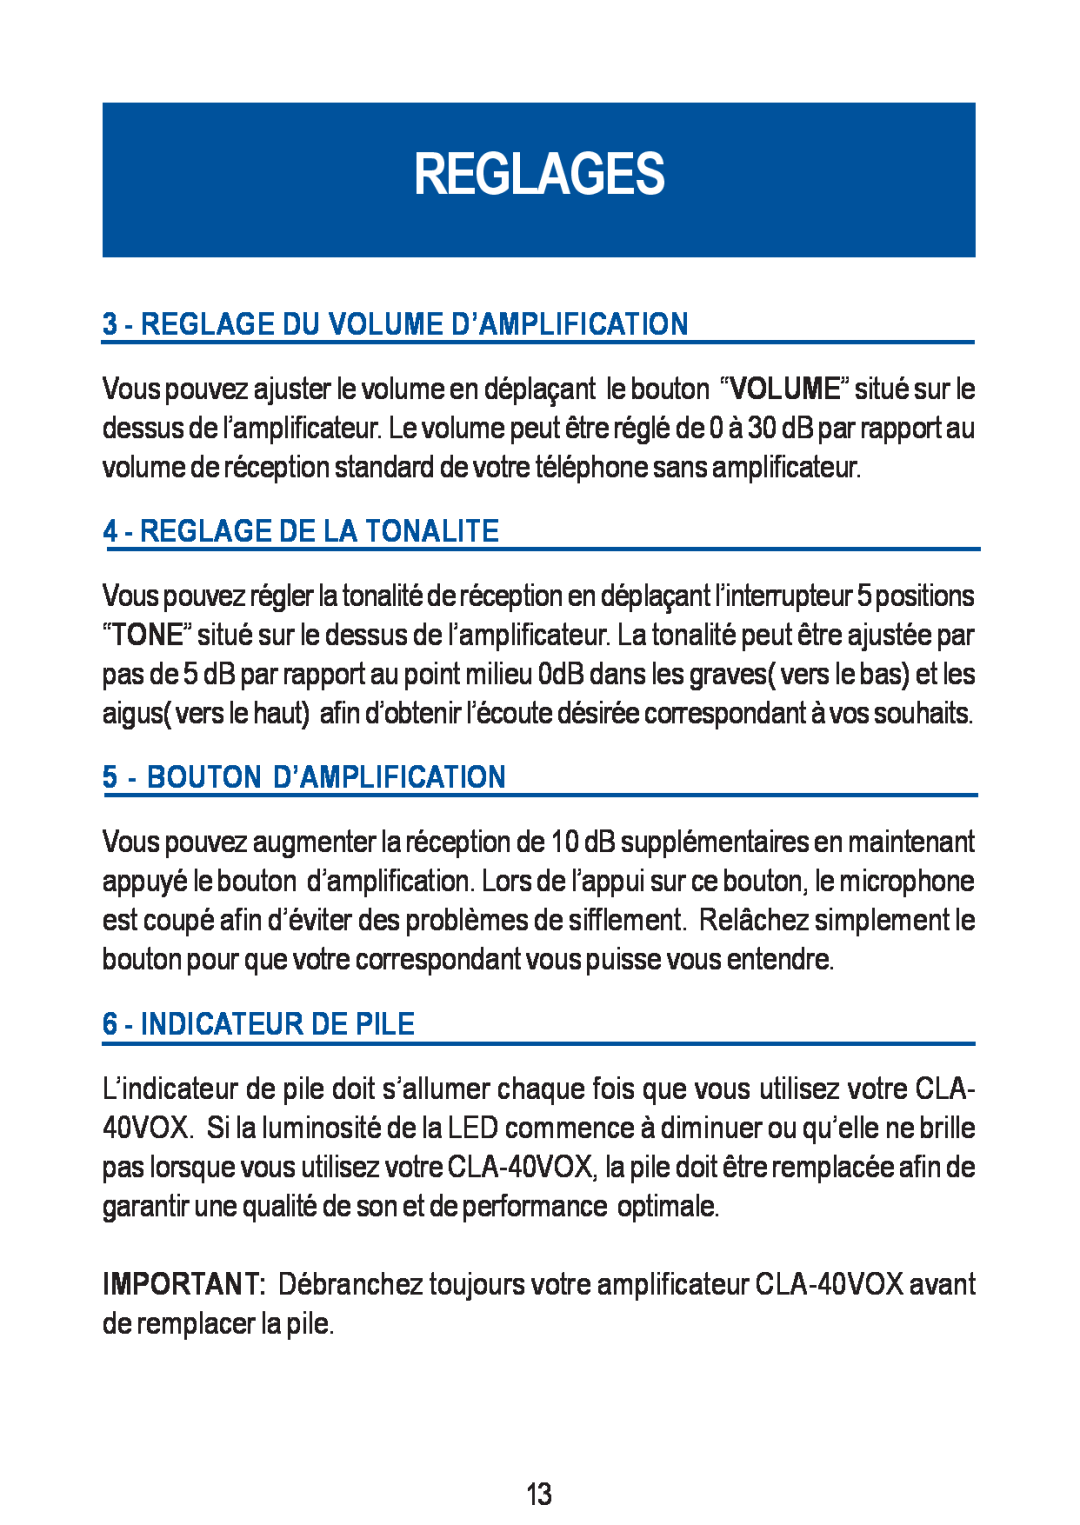 Geemarc CLA-40 VOX manual Reglages, Reglage Du Volume D’Amplification, Reglage De La Tonalite, Bouton D’Amplification 